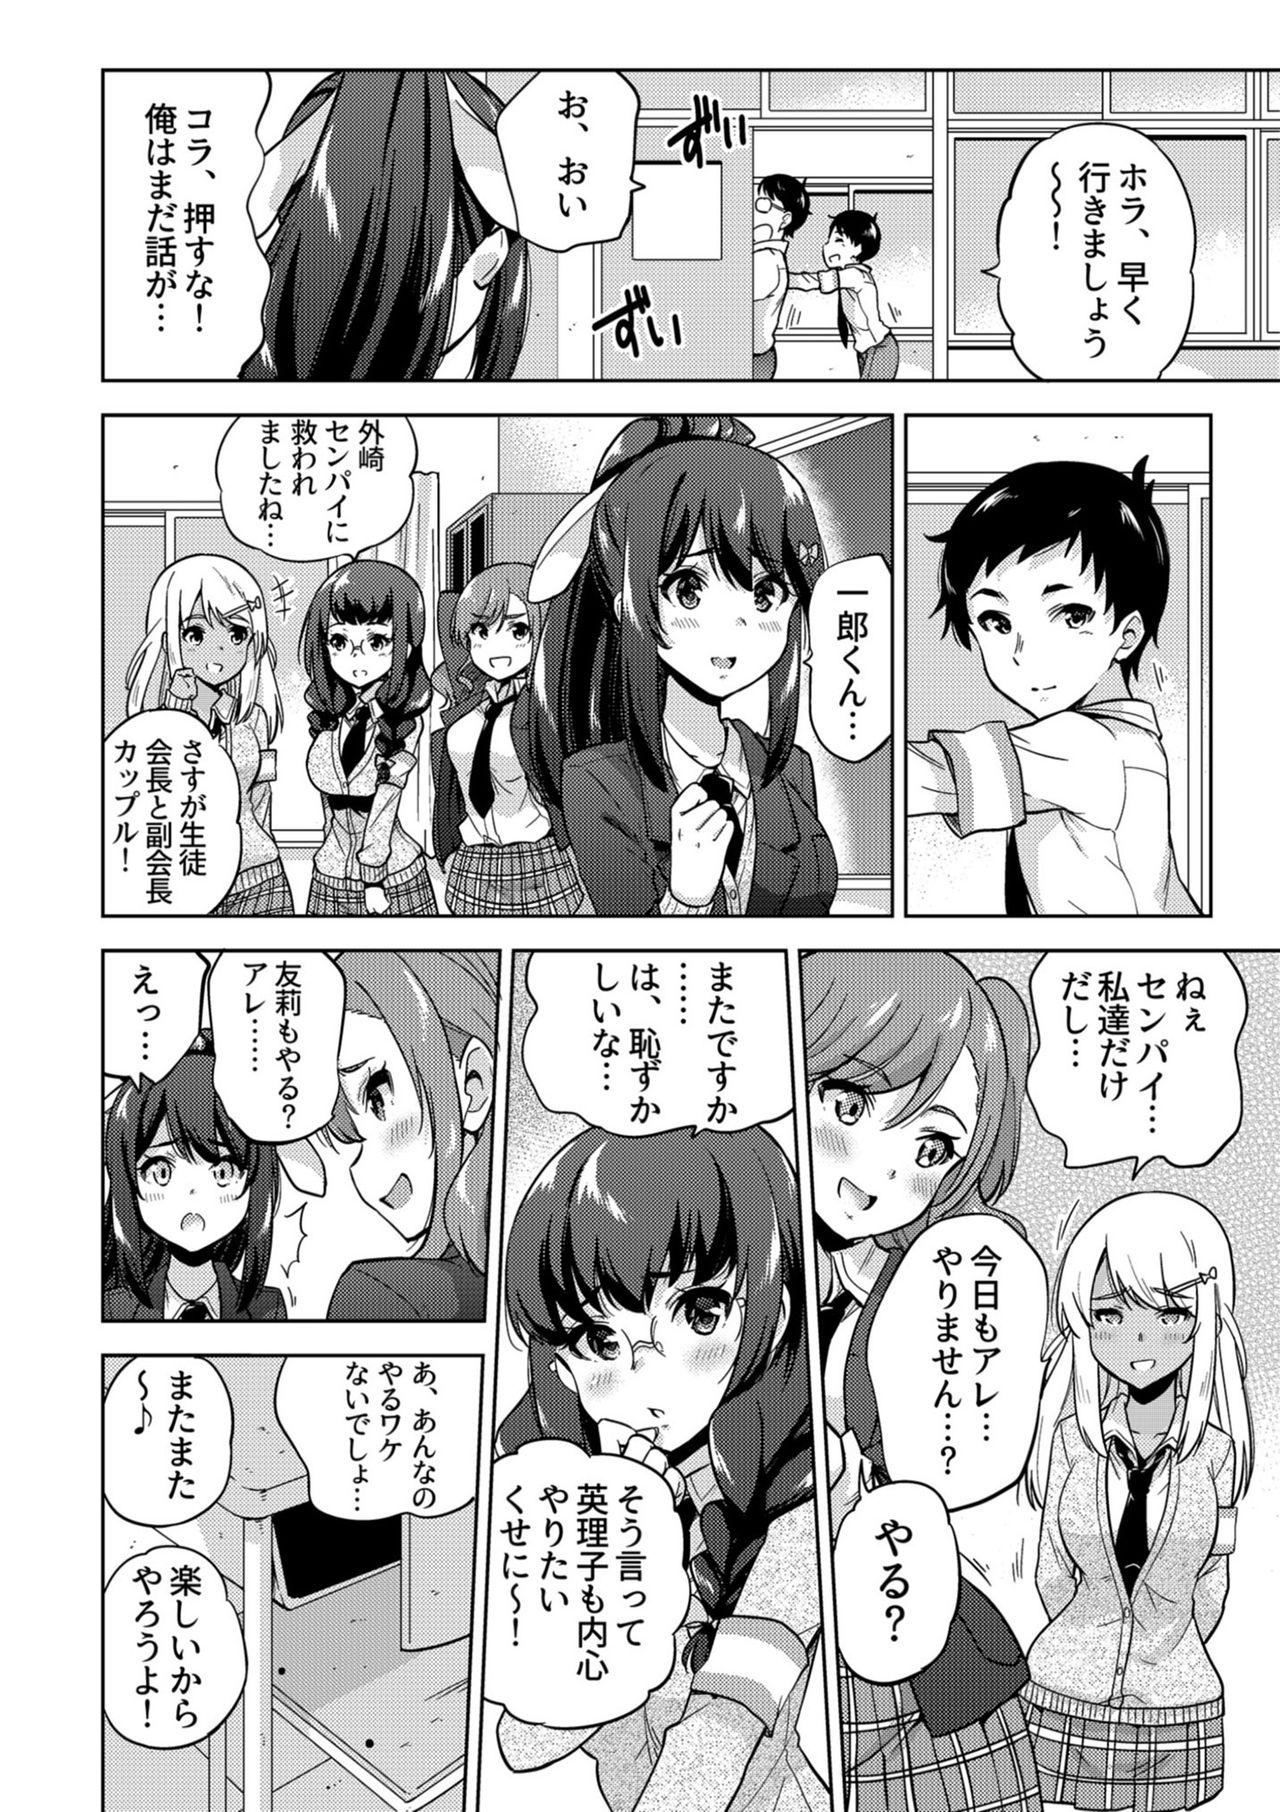 8teenxxx SNS Seitokai Yakuin wo Netotte Share suru Hanashi. - Original Spa - Page 5